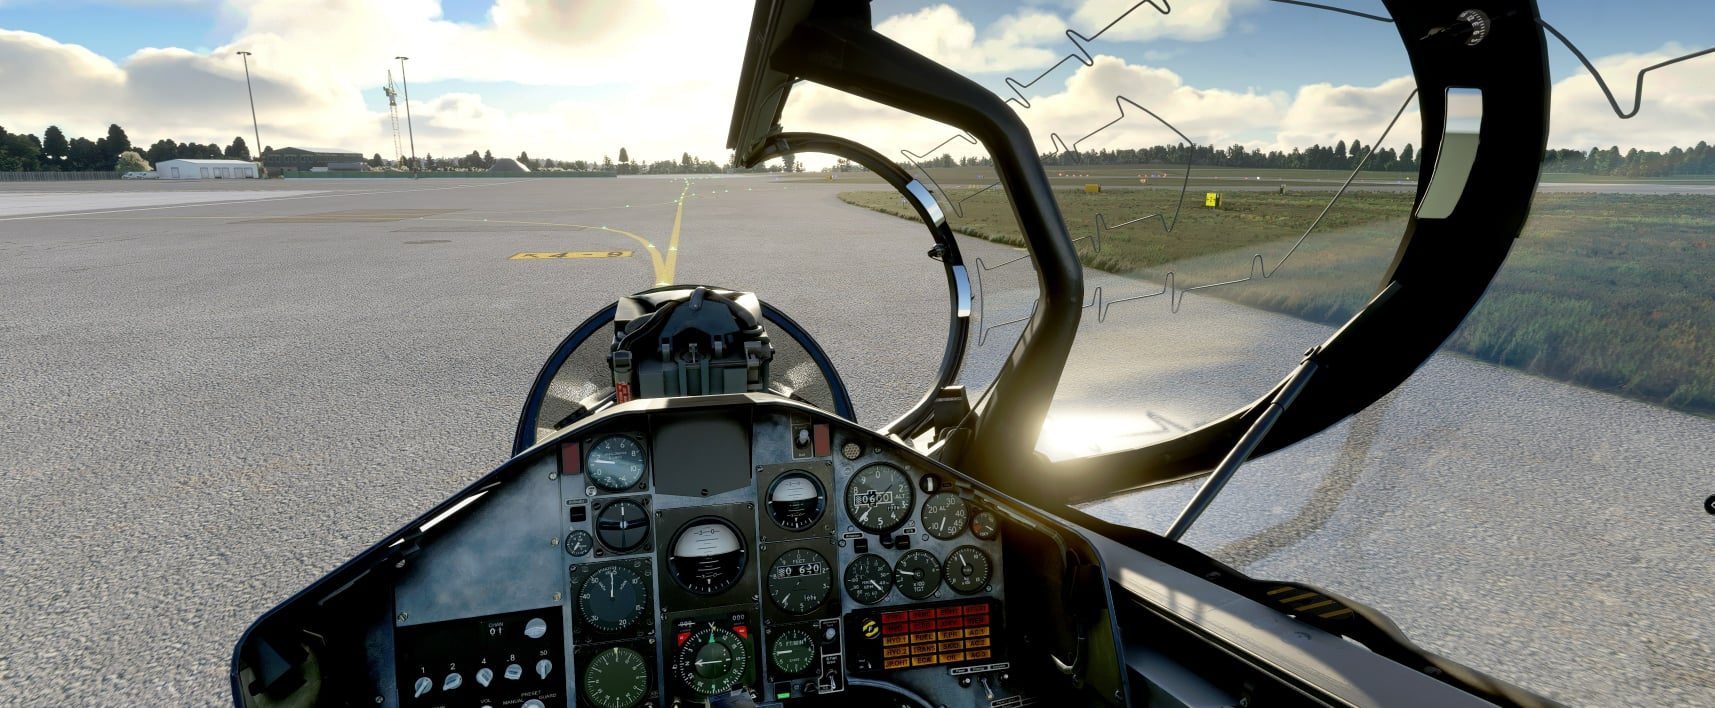 microsoft-flight-simulator-hawk-t1-8-3395062